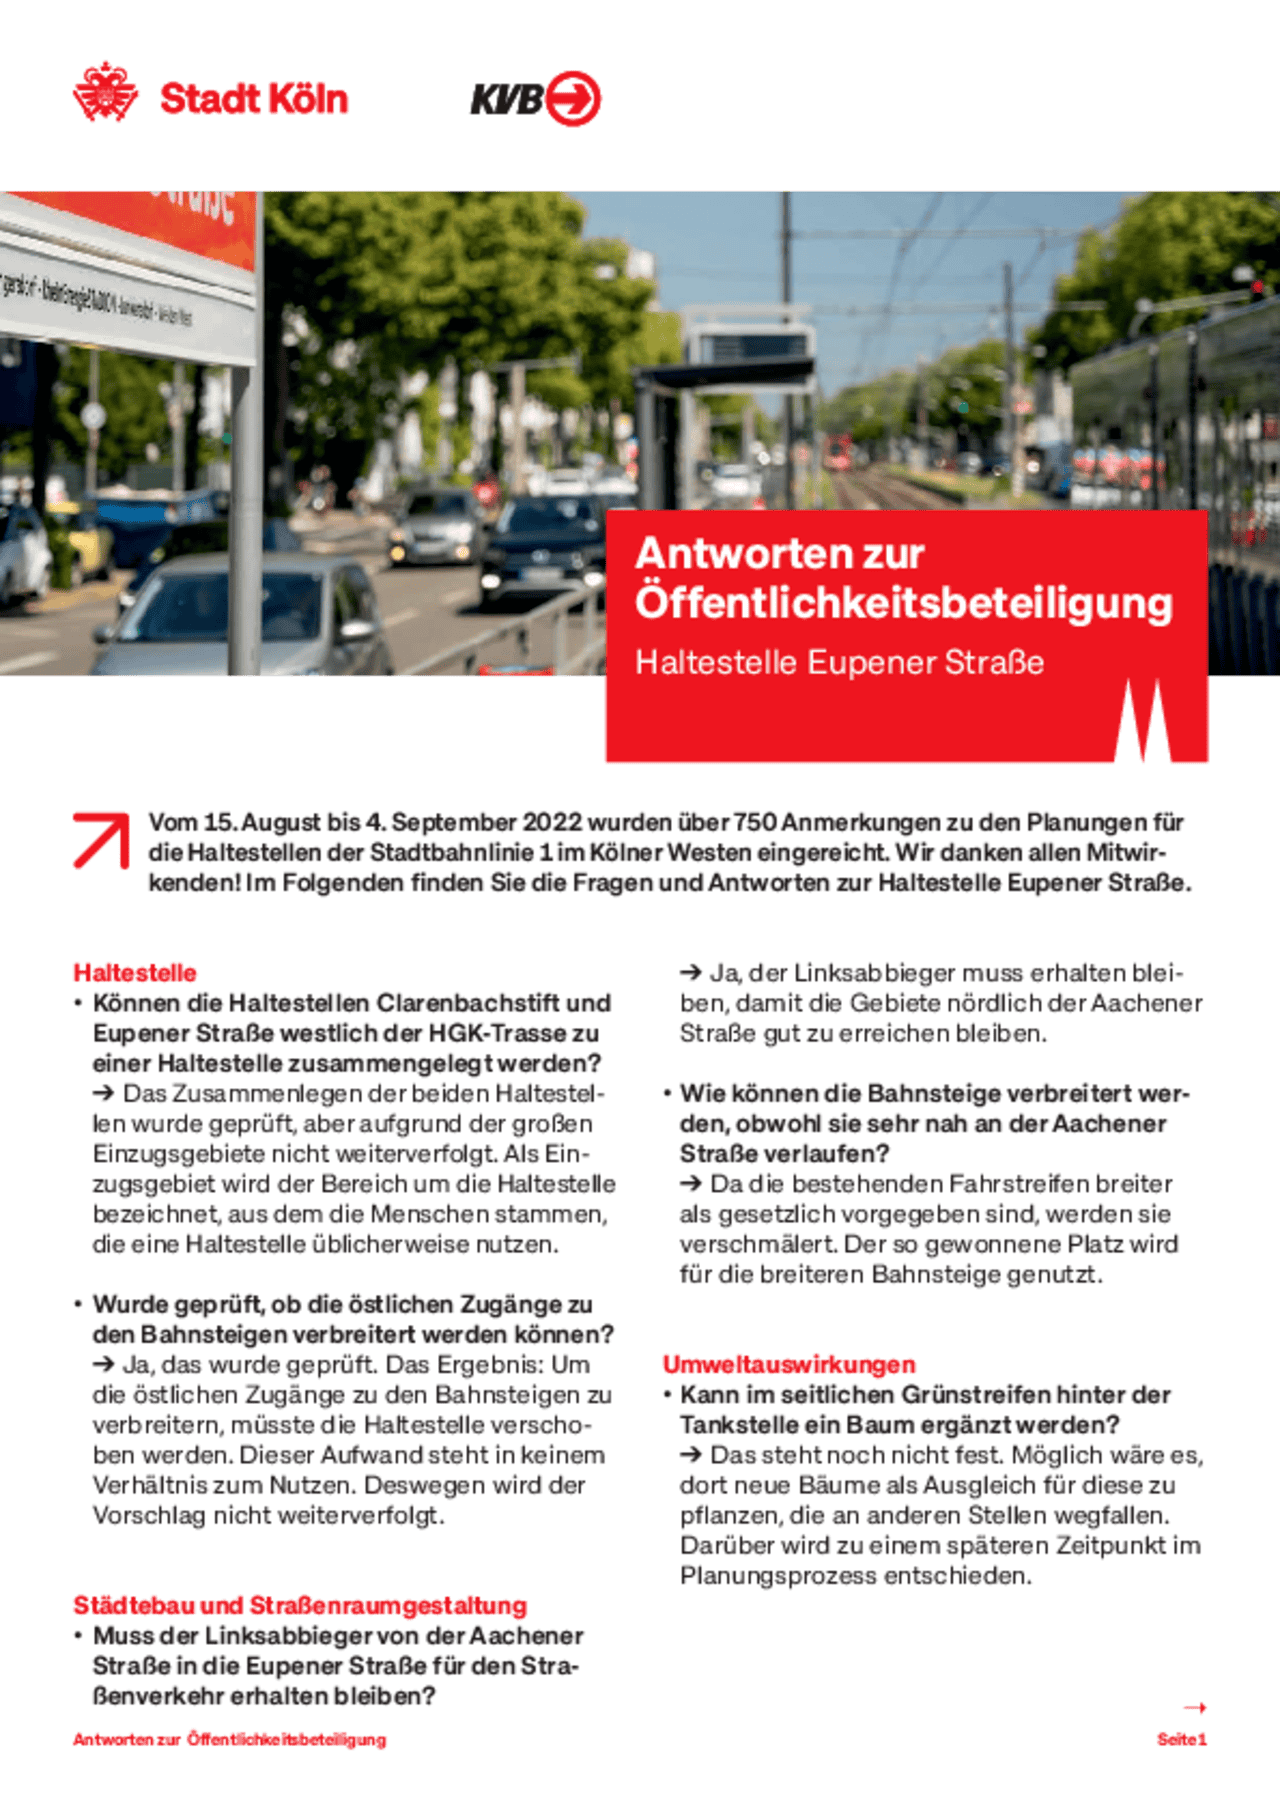 Bildvorschau des Infoblatts zur Haltestelle Eupener Straße